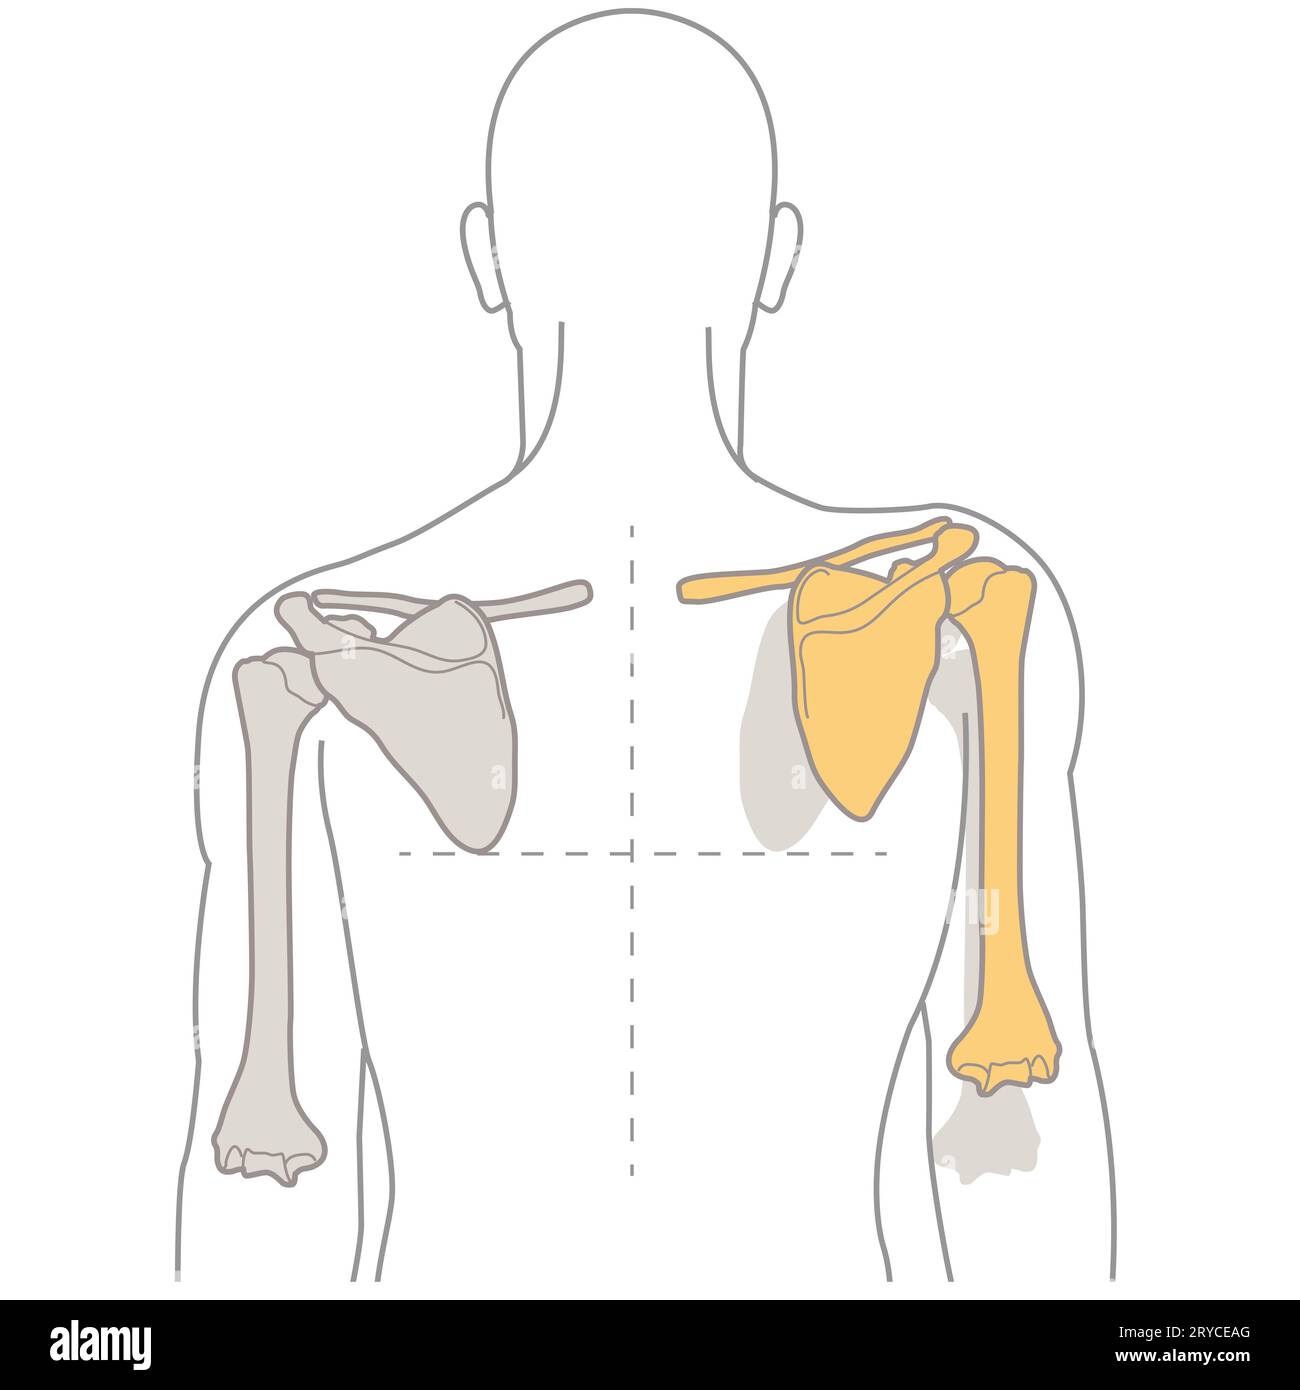 Die Dyskinese der Schulterhöhle ist eine abnorme Bewegung der Schulterblätter, die oft auf Muskelungleichgewichte zurückzuführen ist und zu Schmerzen, Funktionsstörungen und Veränderungen der Schulter führt Stockfoto